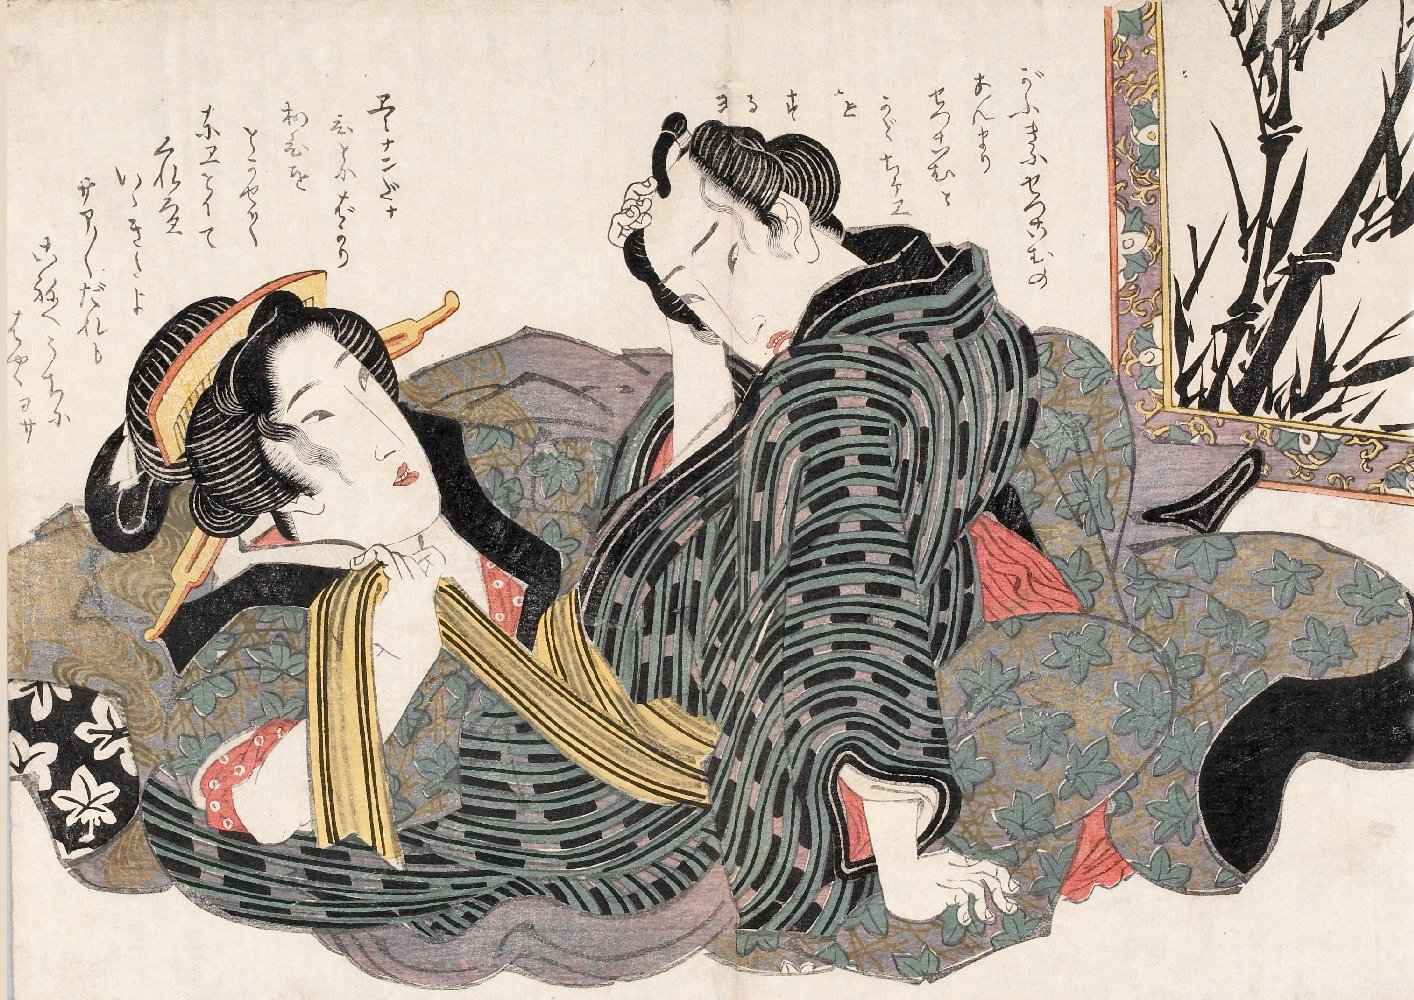 Тентакли, гейши и черепа, обагренные семенем: каким был секс в стариной Японии